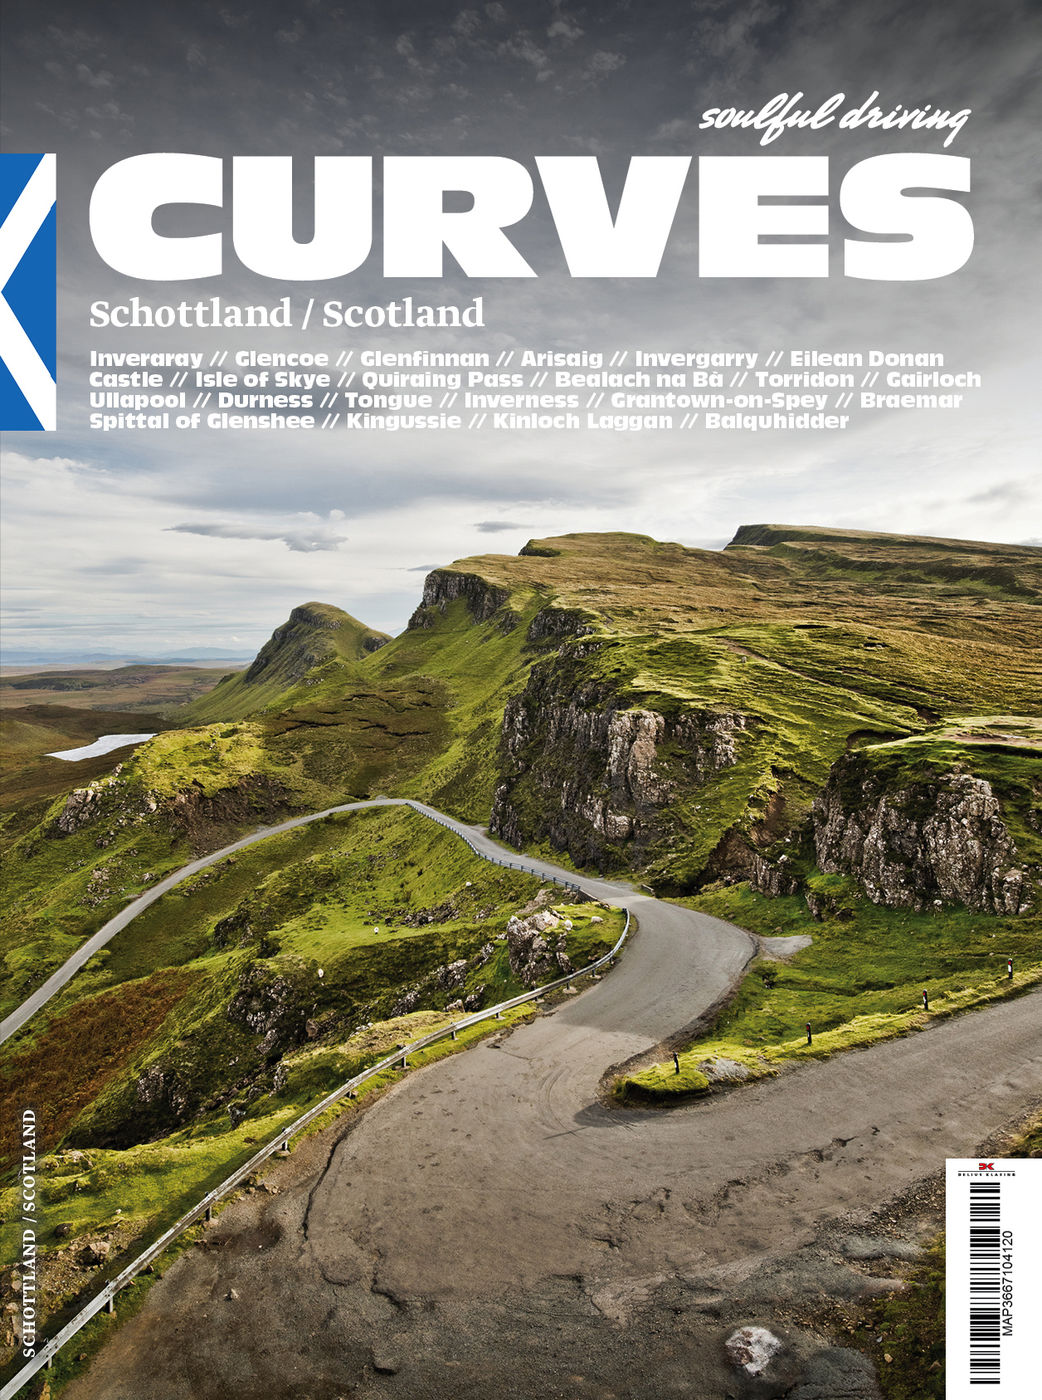 Curves Schottland
Curves Schottland
Curves Schottland